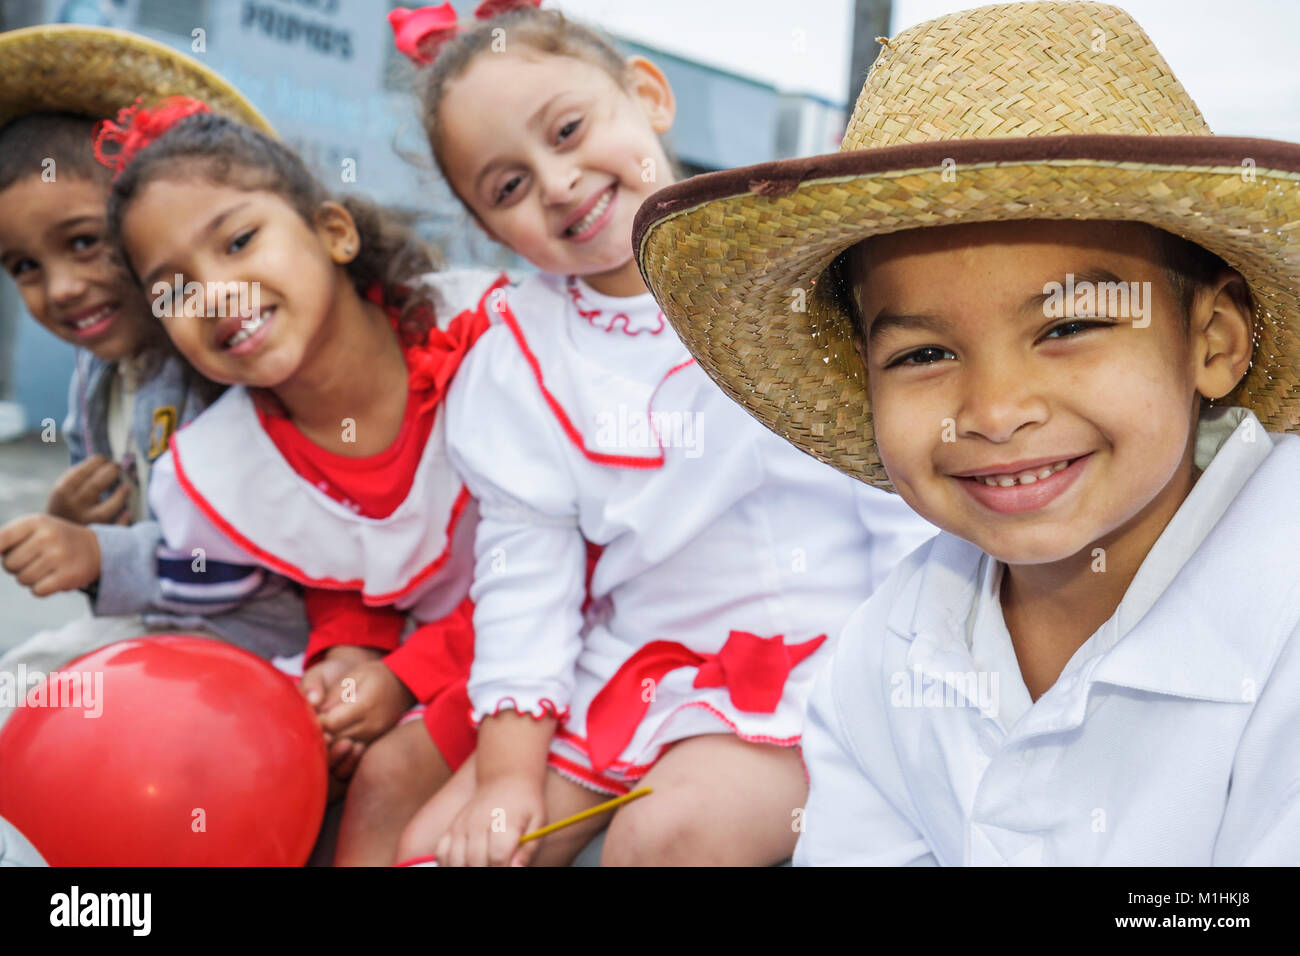 Florida, Hialeah, Jose Marti Parade, zu Ehren des kubanischen Dichters, Teilnehmers, hispanischer Junge, männliche Kinder, Kinder, Mädchen, Kostüm, Strohhut, FL080120048 Stockfoto